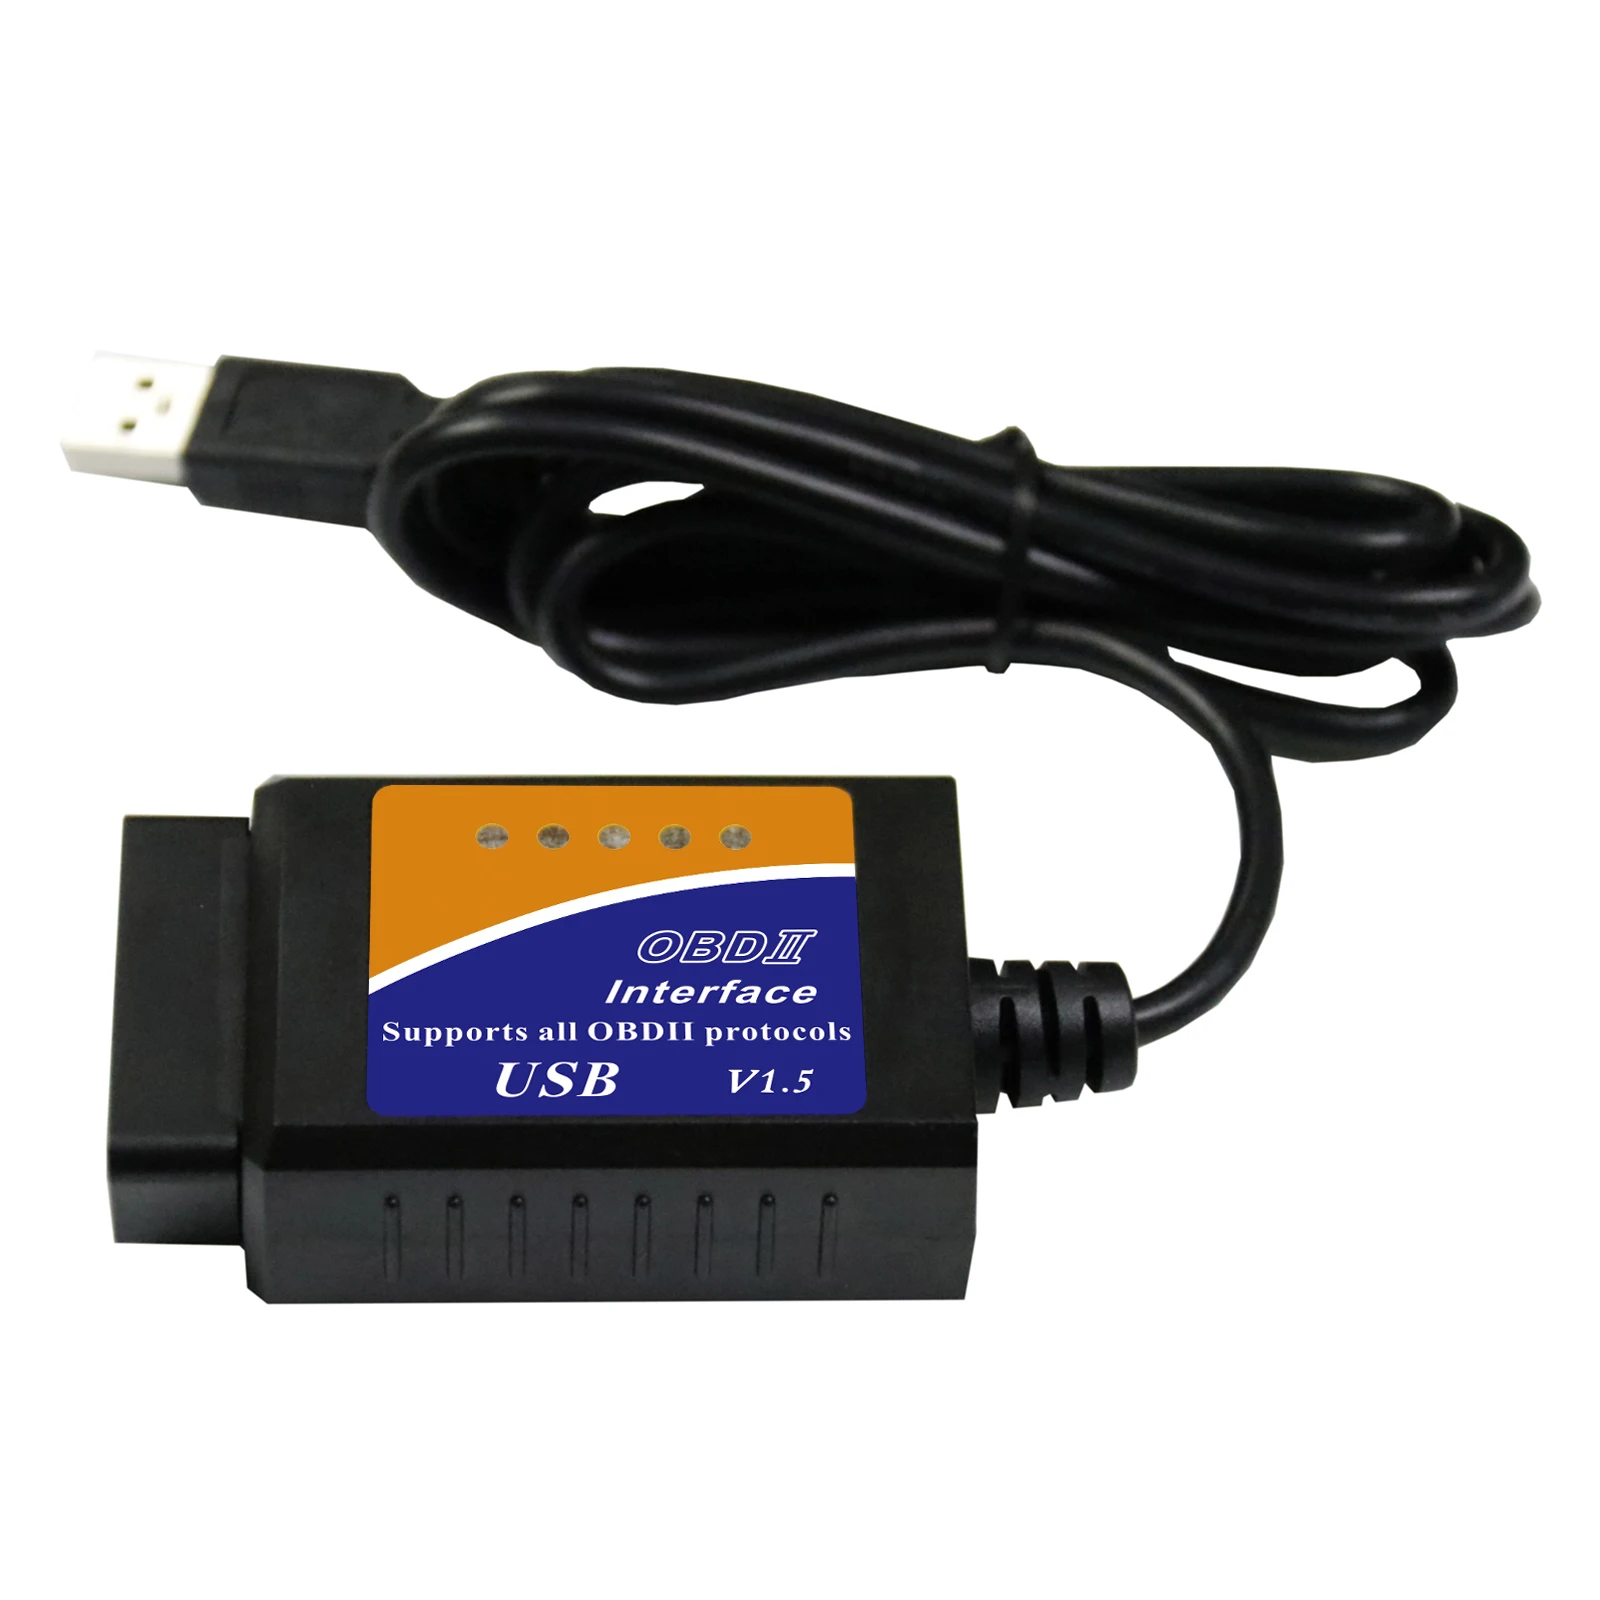 vil gøre billig Rettidig Wholesale V04HU ELM327 USB Cables Adapter OBD2 Vehicles Diagnostic Scanner ELM  327 obd2 software for PC download windows 10 obd2 scanner From m.alibaba.com